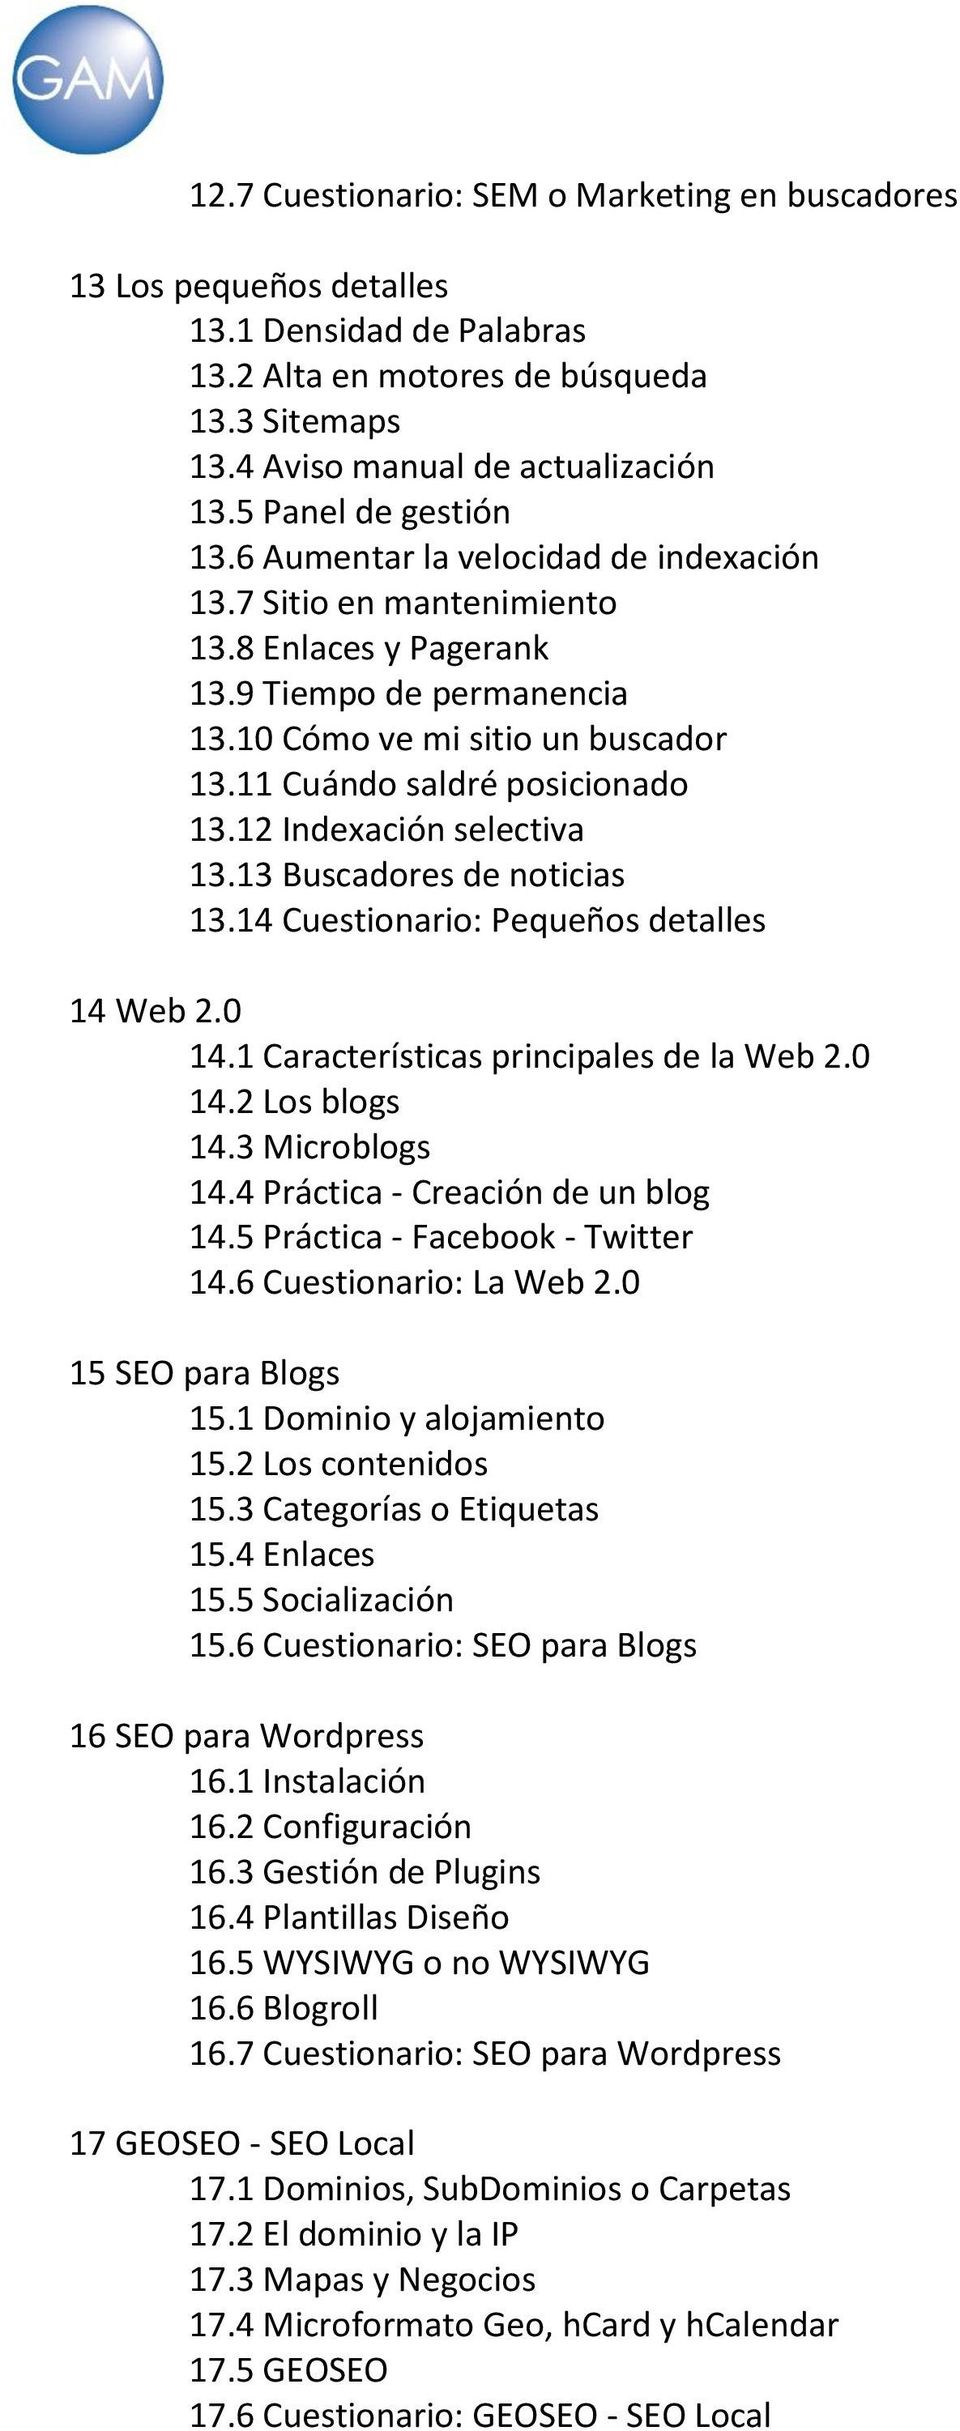 11 Cuándo saldré posicionado 13.12 Indexación selectiva 13.13 Buscadores de noticias 13.14 Cuestionario: Pequeños detalles 14 Web 2.0 14.1 Características principales de la Web 2.0 14.2 Los blogs 14.